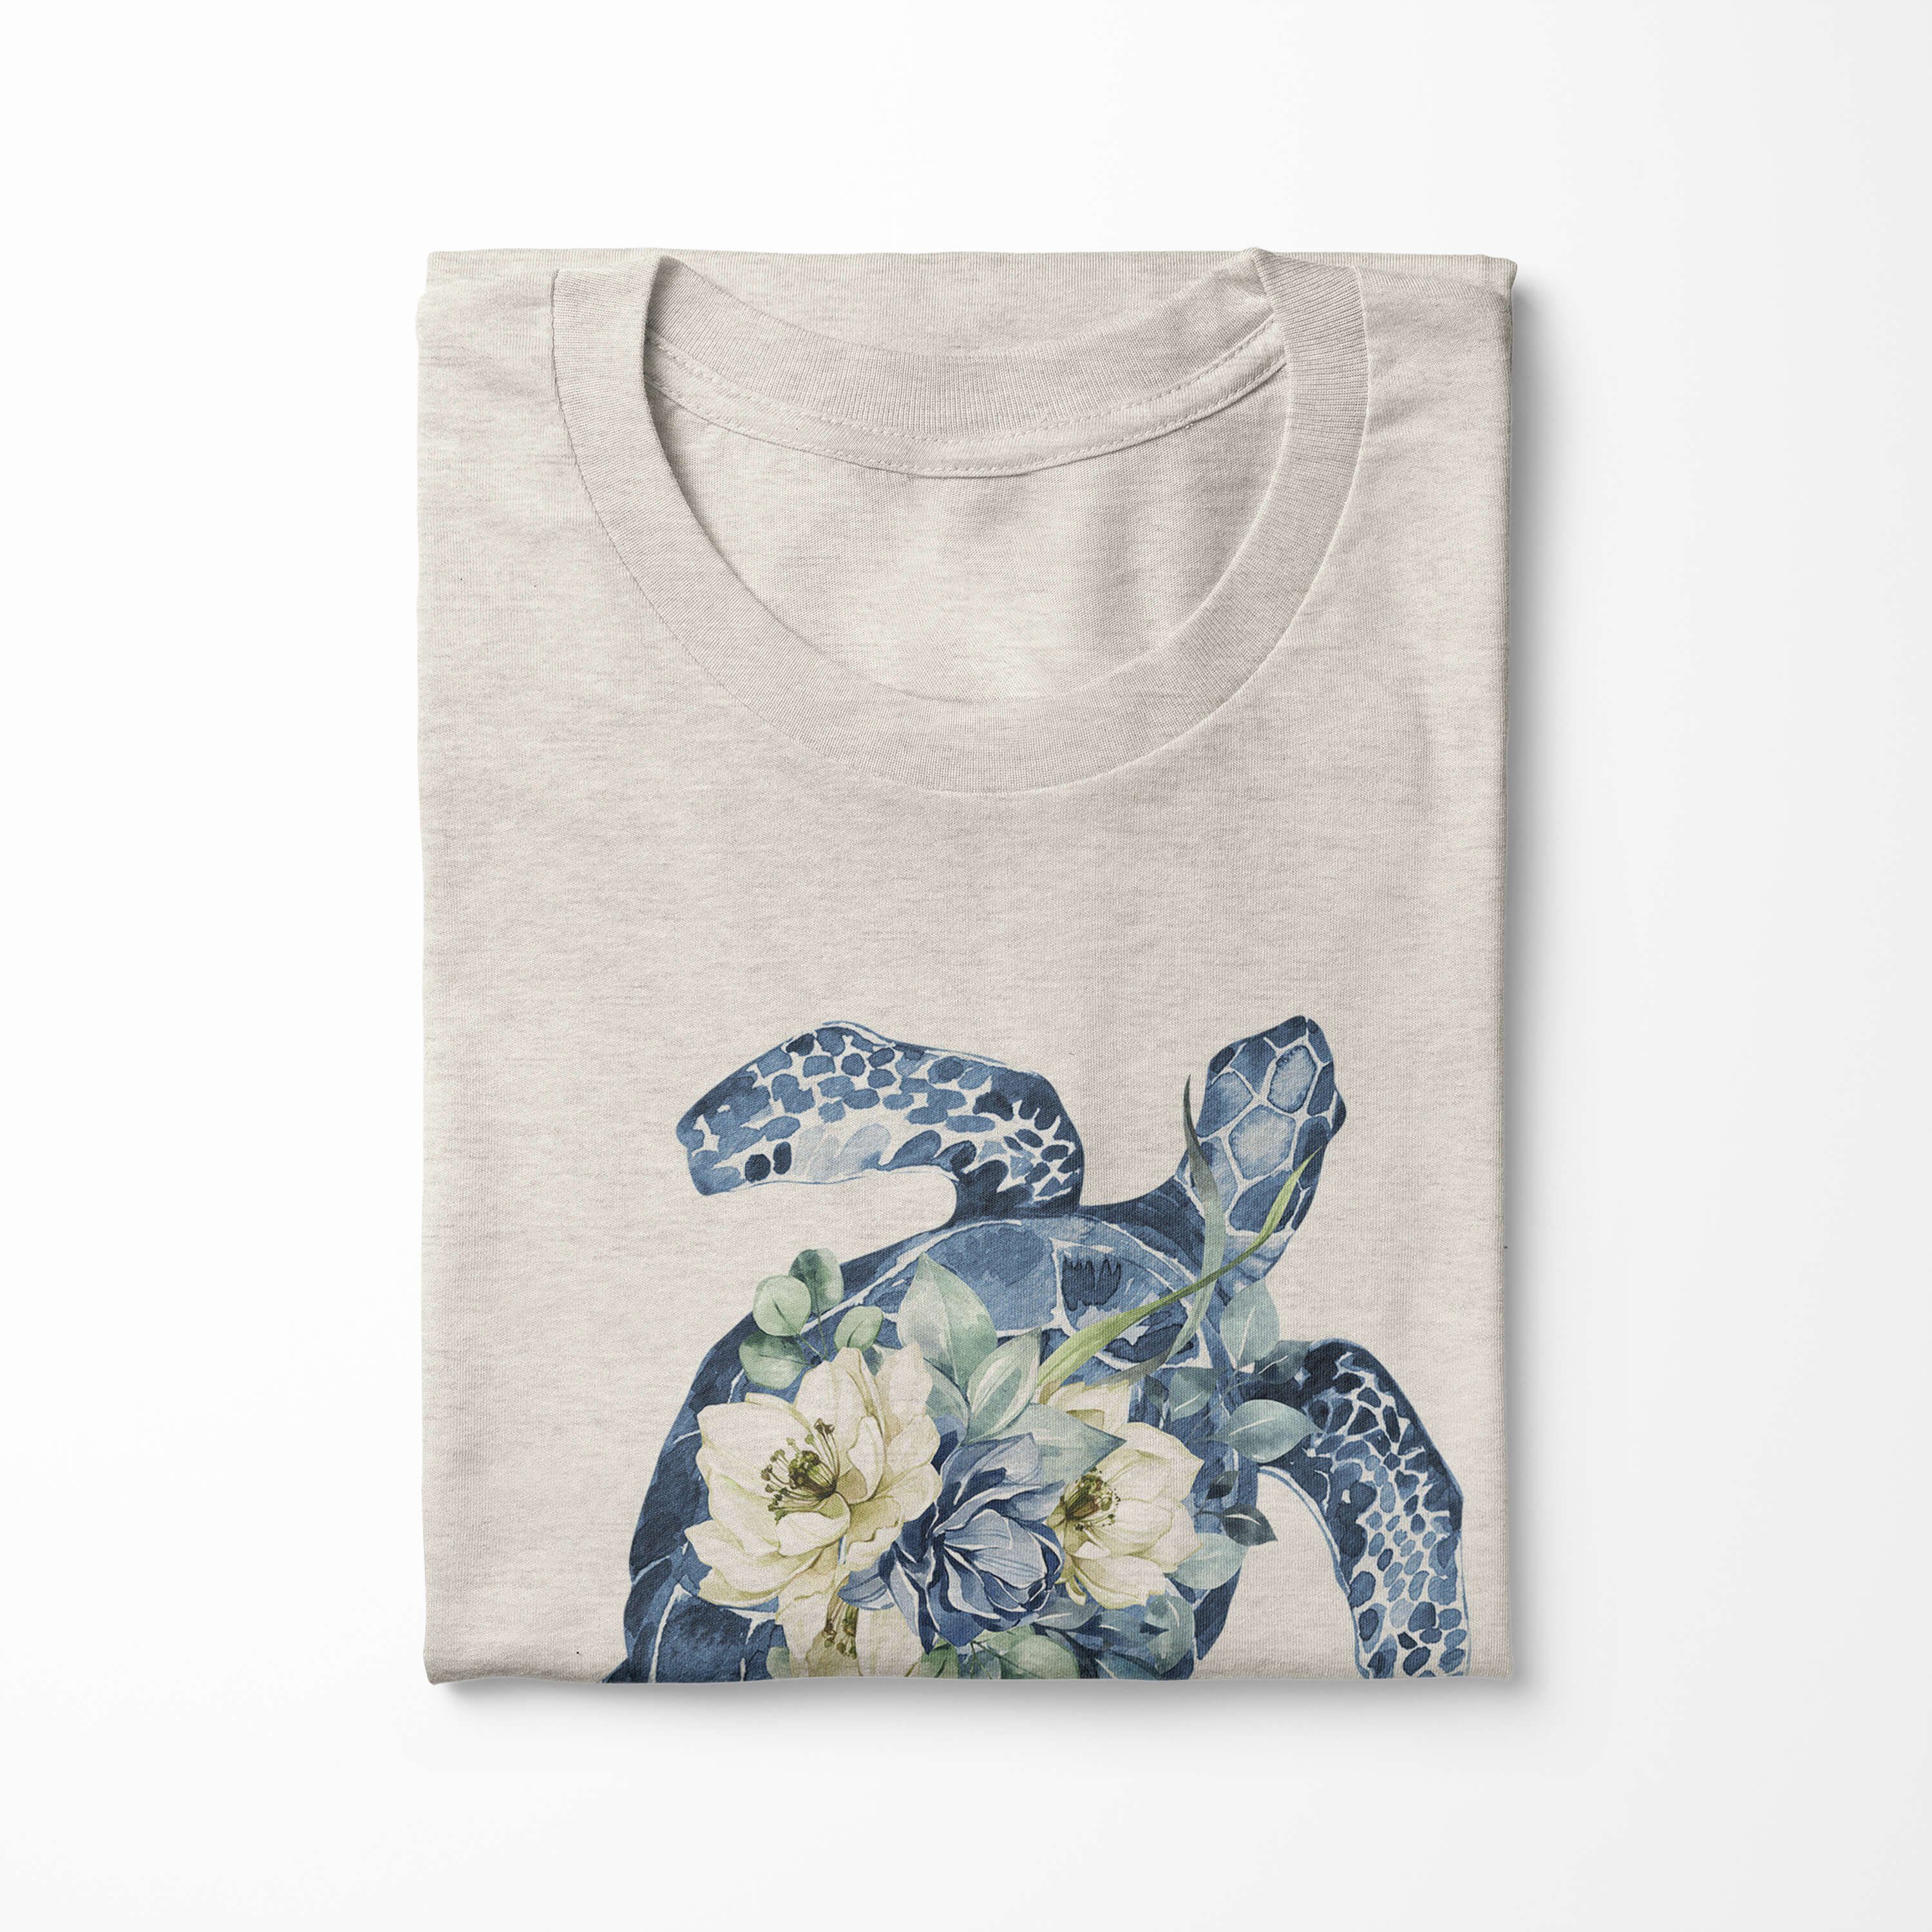 Herren gekämmte T-Shirt (1-tlg) Blumen Motiv 100% Shirt Nachhalti Sinus Wasserfarben Bio-Baumwolle Seeschildkröte Art T-Shirt